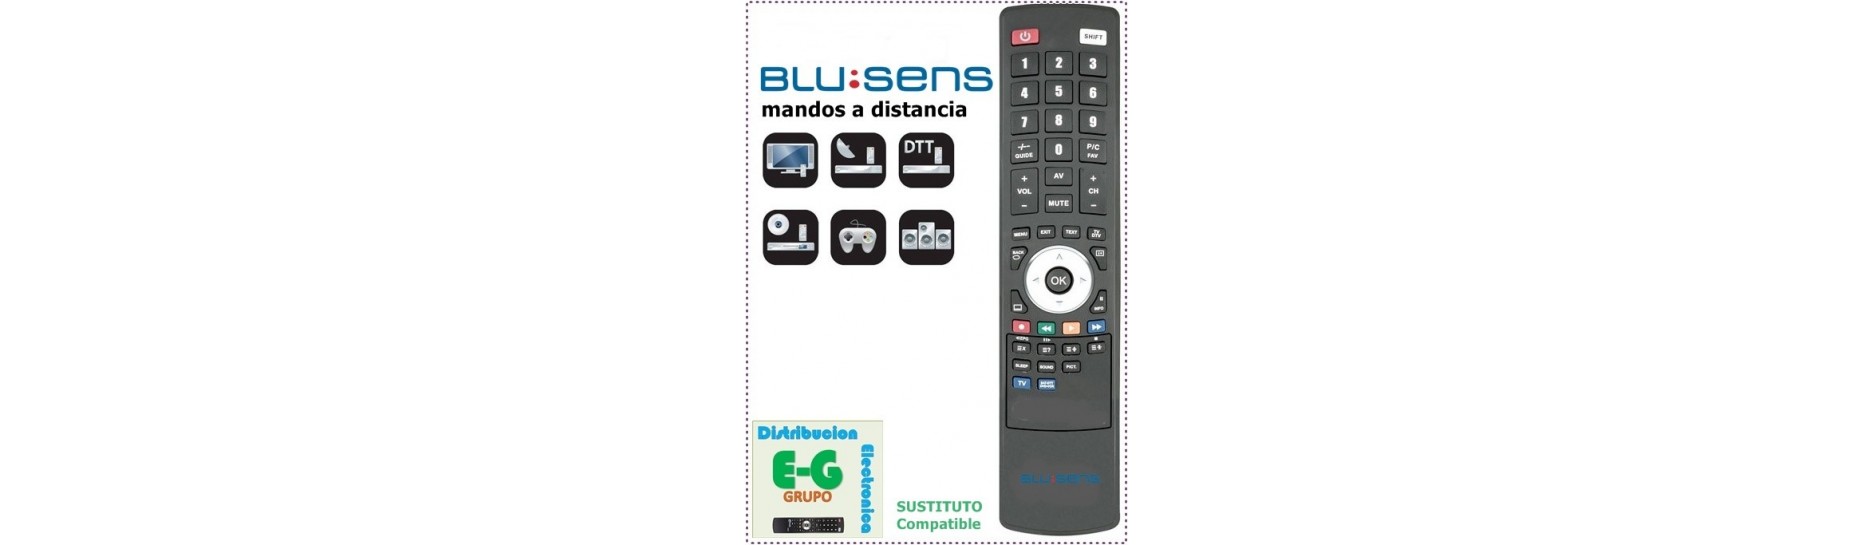 MANDO A DISTANCIA TELEVISION BLUSENS, TELEVISOR Y TV BLUSENS